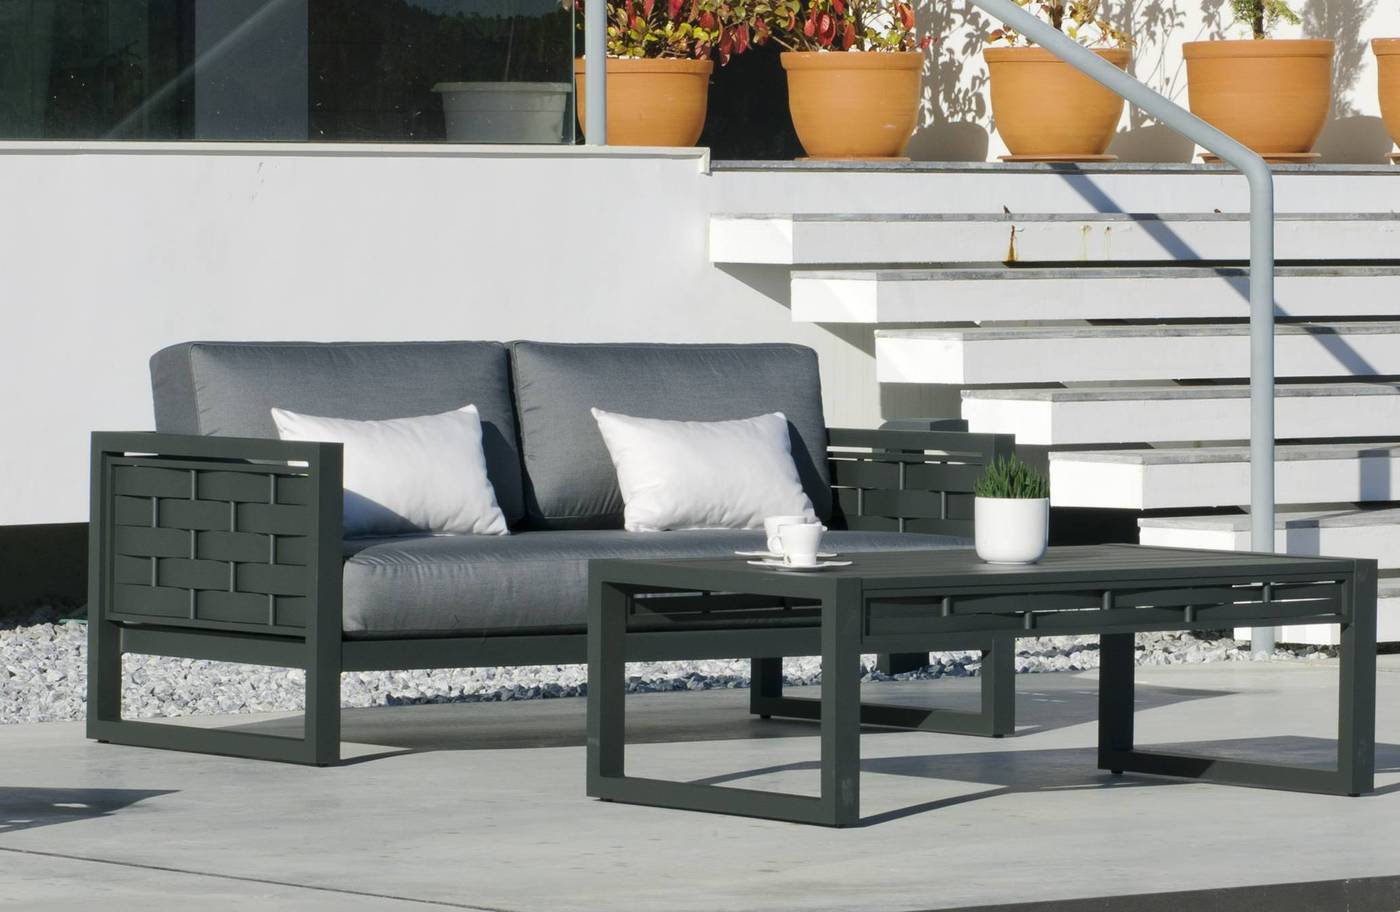 Mesa Aluminio Luxe Augusta-4 - Lujosa mesa de centro para jardín o terraza. Estructura 100% de aluminio en color blanco, antracita o champagne.